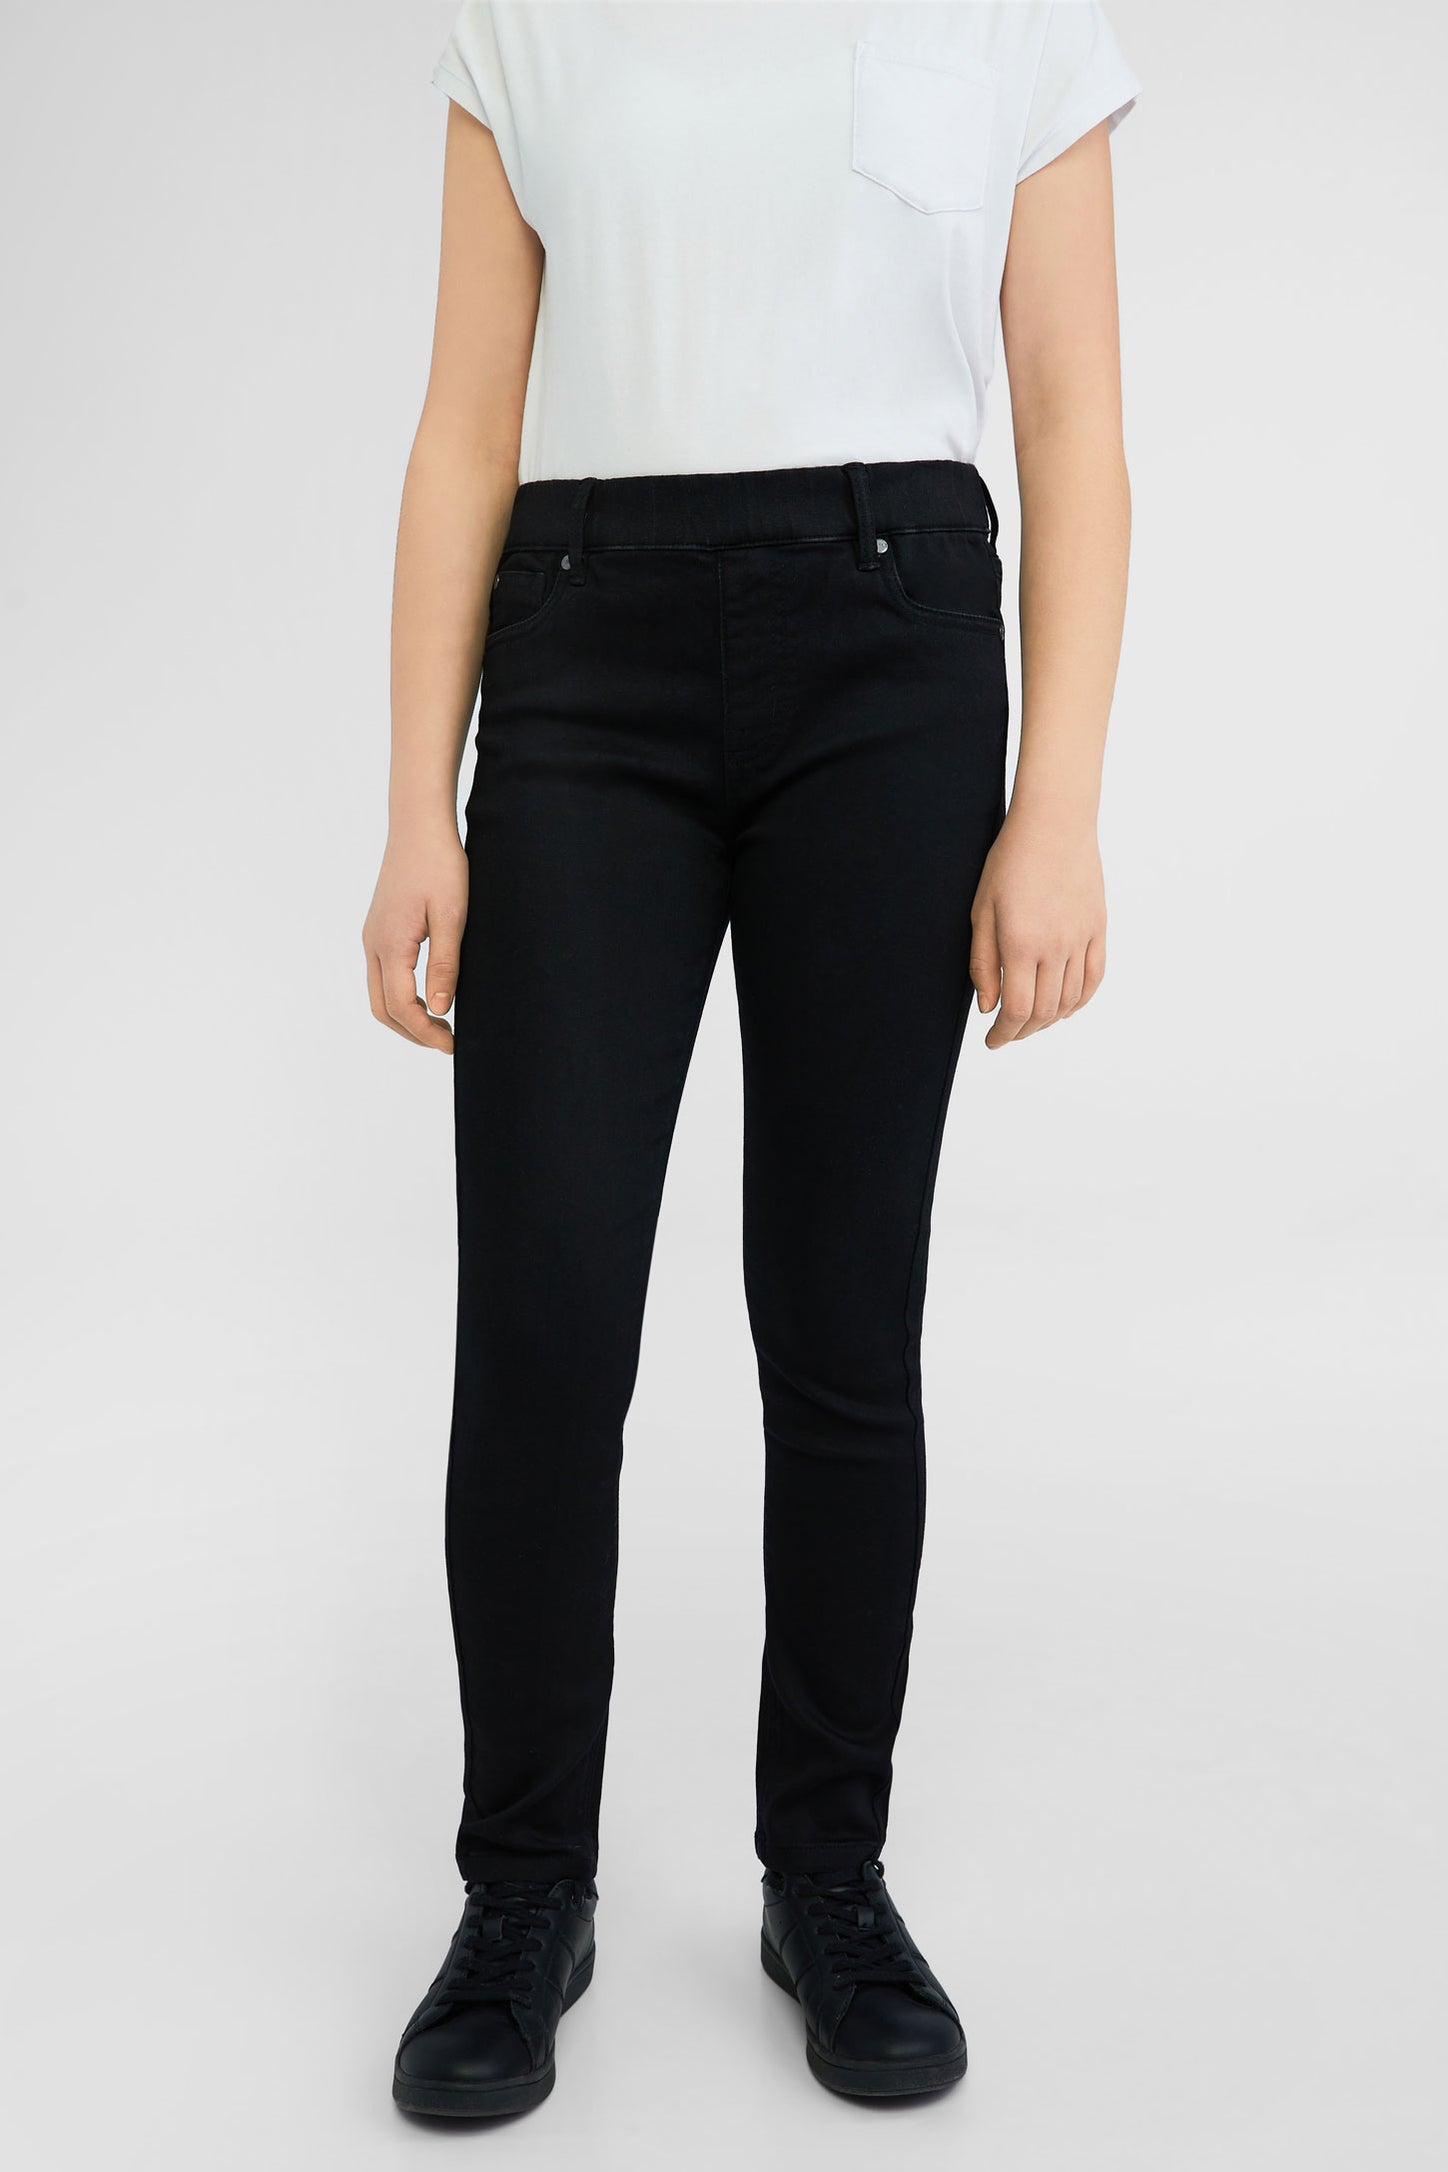 1 leggings décontractés en denim extensible pour enfants filles jeans  imprimé fl